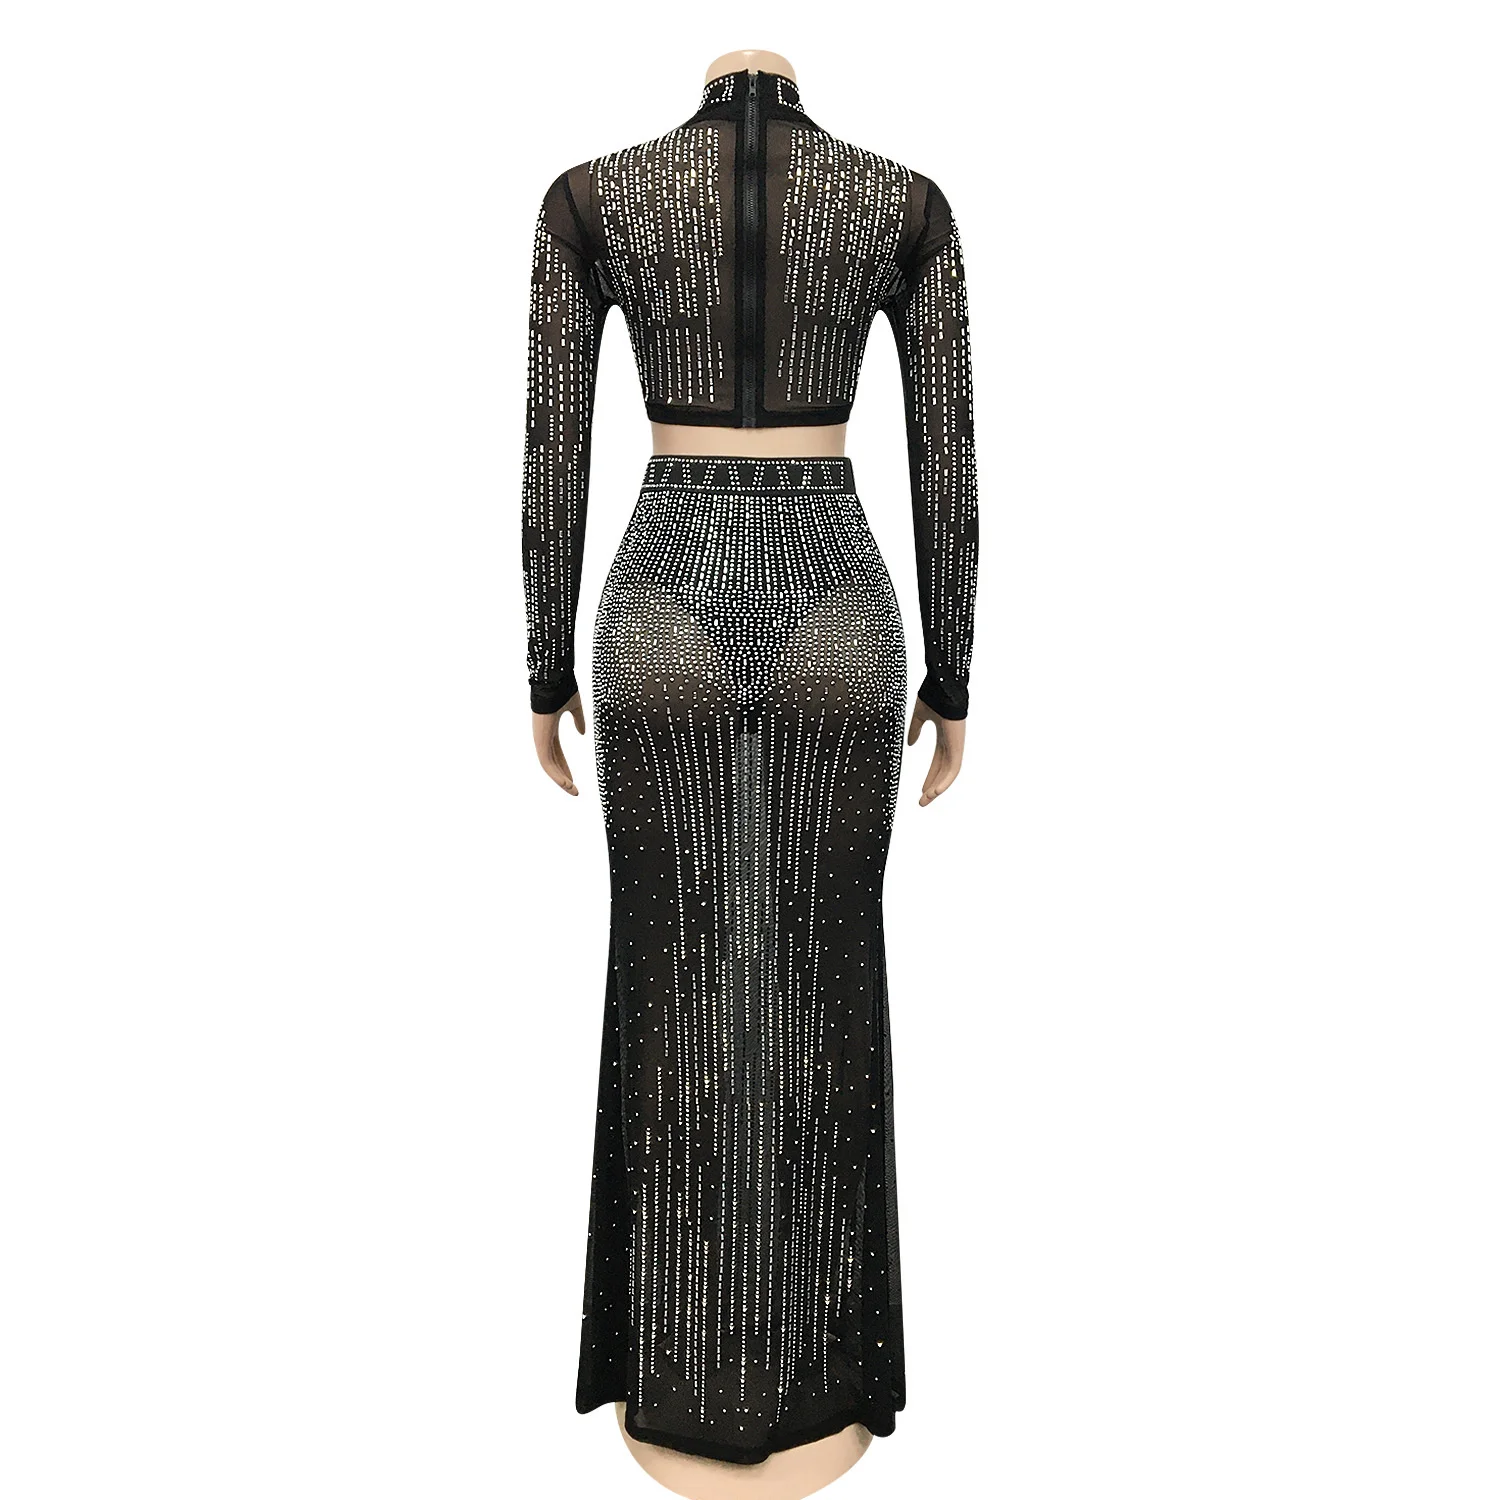 Женское платье для ночного клуба Zoctuo, привлекательное Сетчатое Прозрачное платье с длинным рукавом и длинной юбкой, комплект из двух предме... от AliExpress RU&CIS NEW